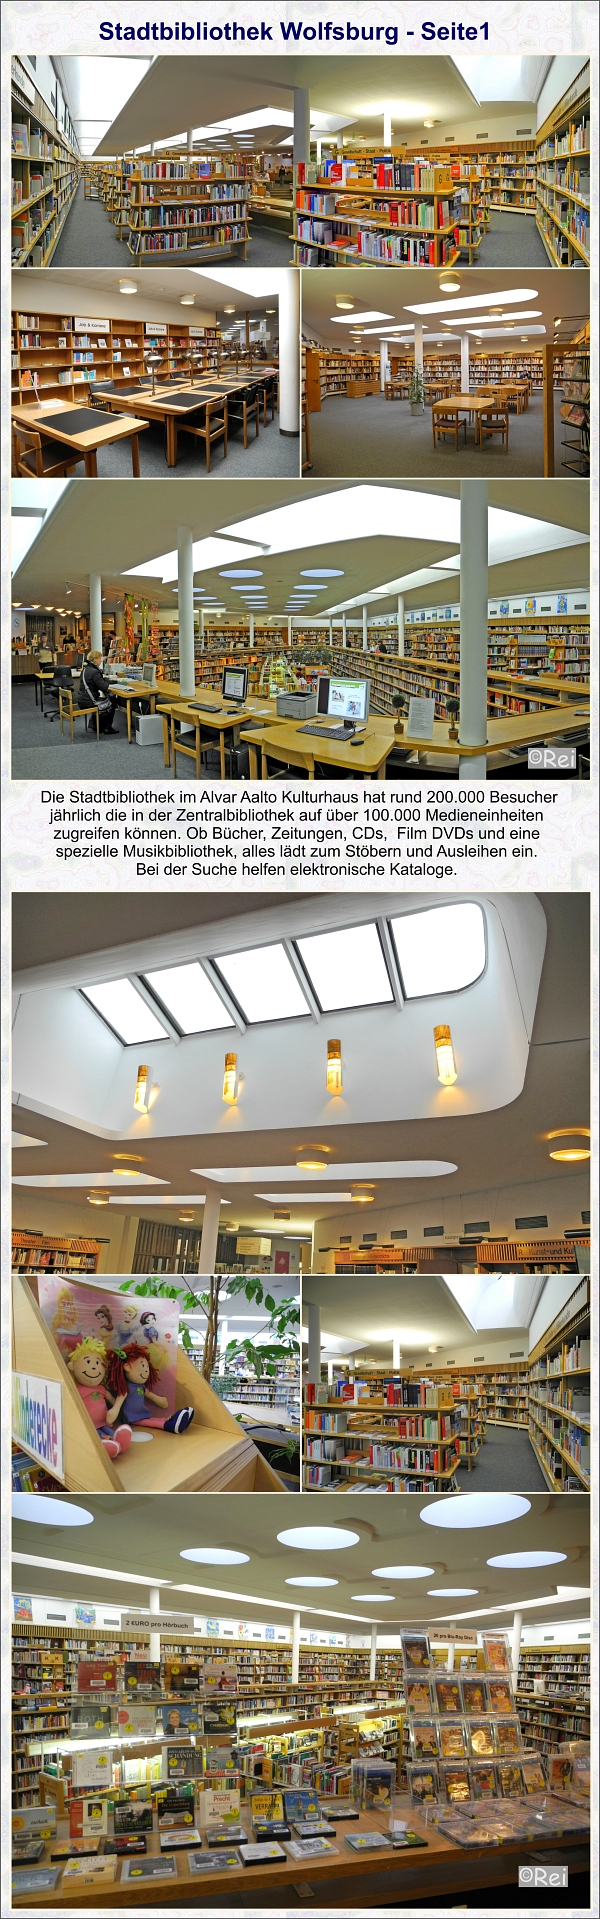 Stadtbibliothek im Kulturhaus Wolfsburg